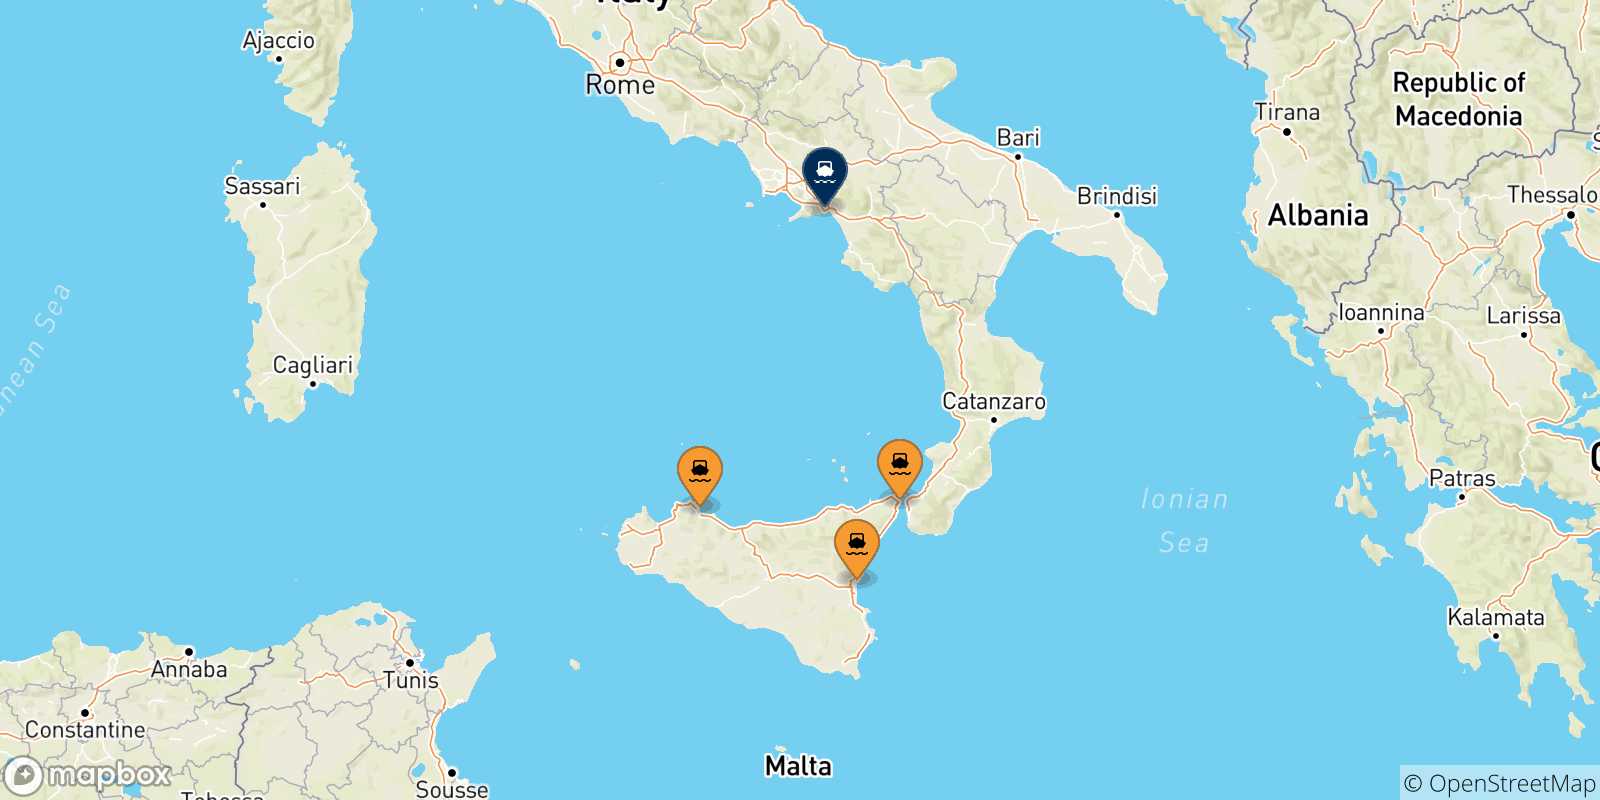 Mappa delle possibili rotte tra l'Italia e Salerno